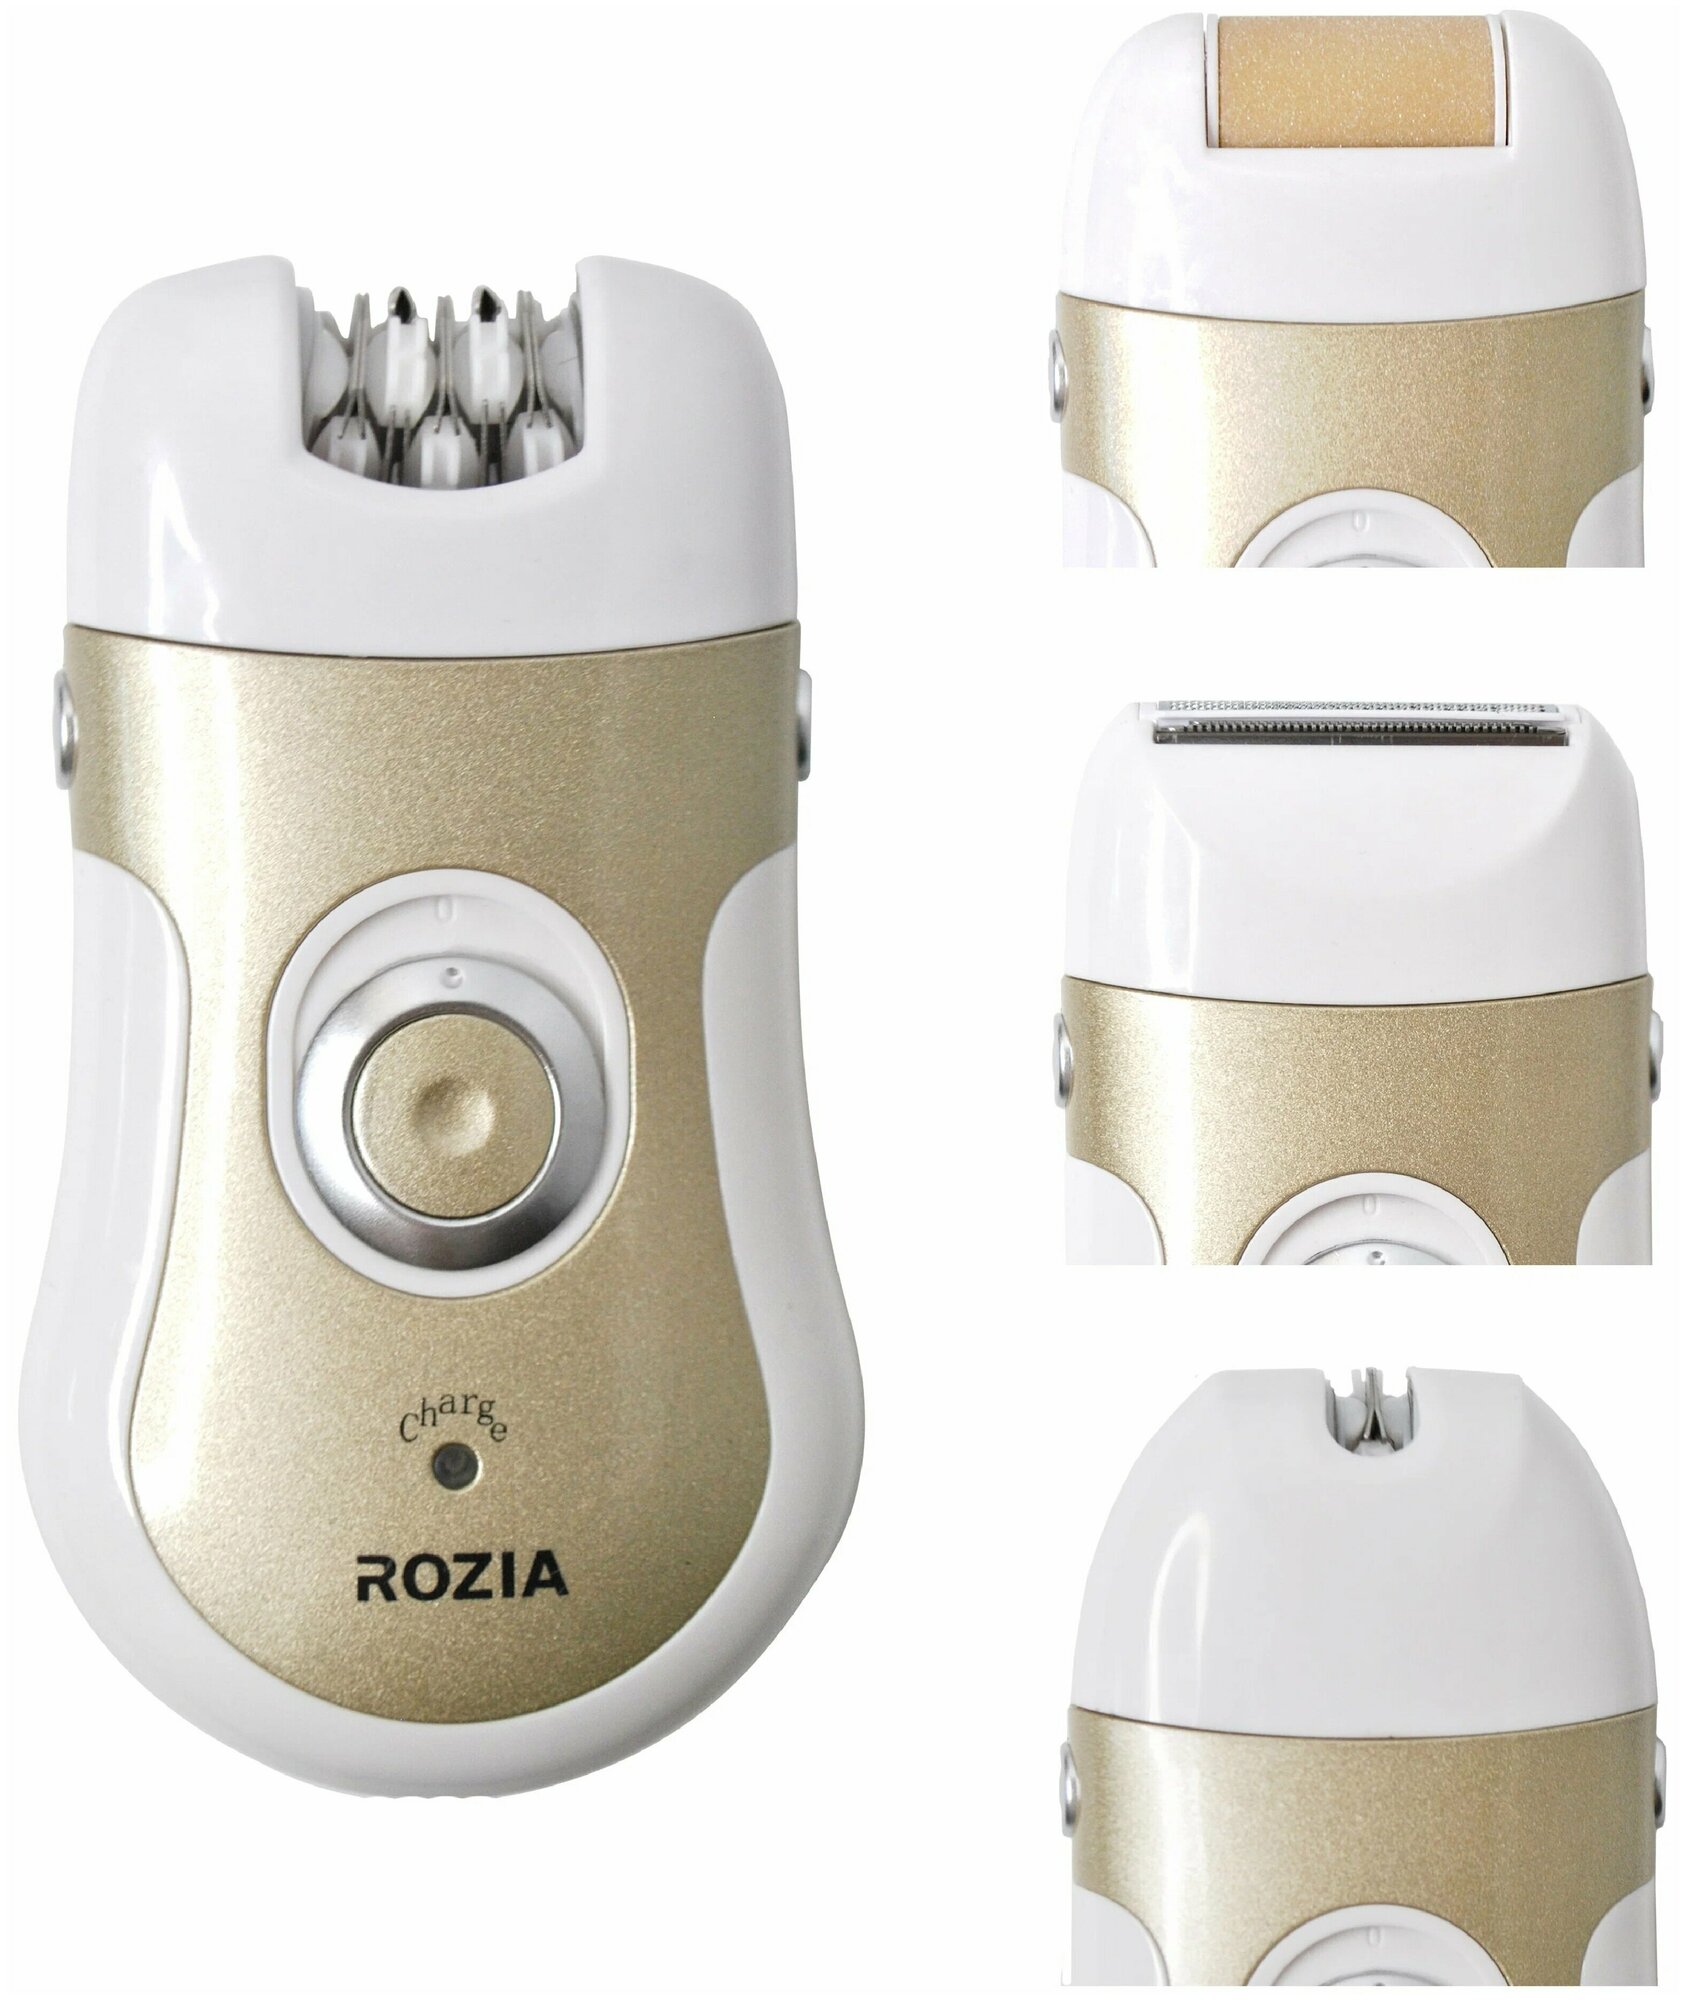 Эпилятор Rozia 4в1 HB6006 / Профессиональный эпилятор/уход за телом / Эпилятор женский / Эпилятор 4 in 1 для домашнего использования